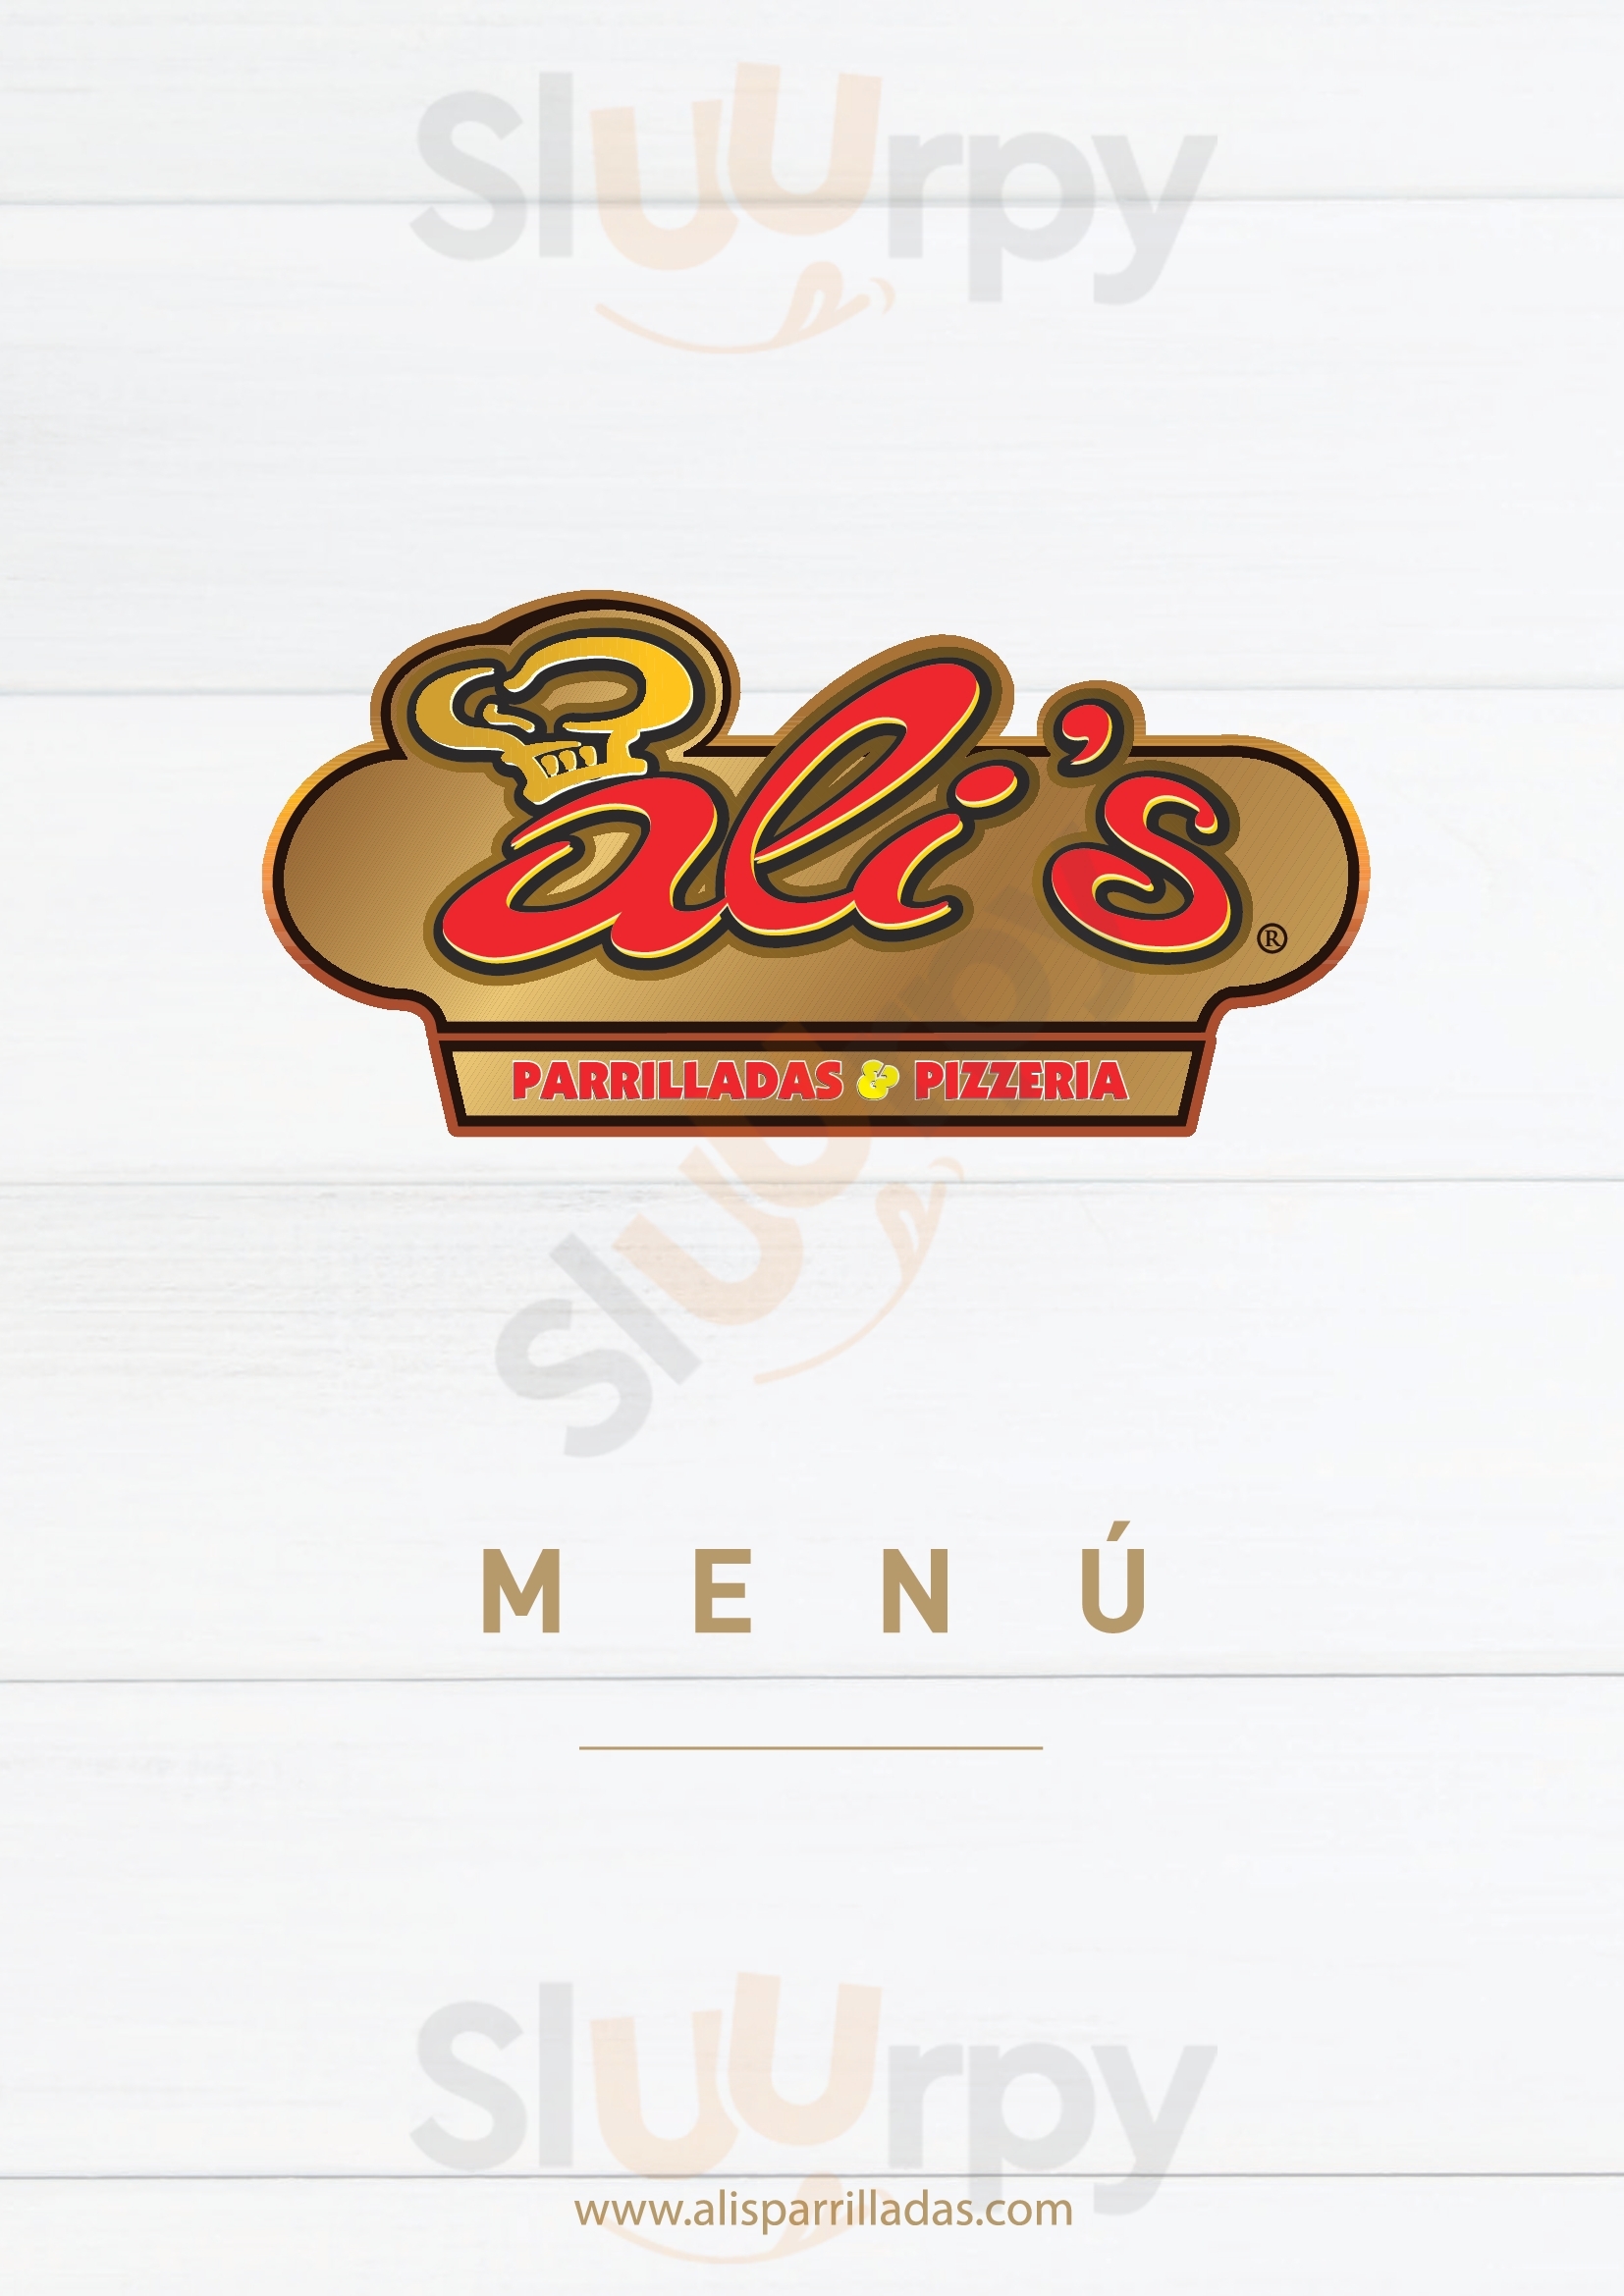 Ali's Parrilladas & Pizzeria Tumbaco Menu - 1